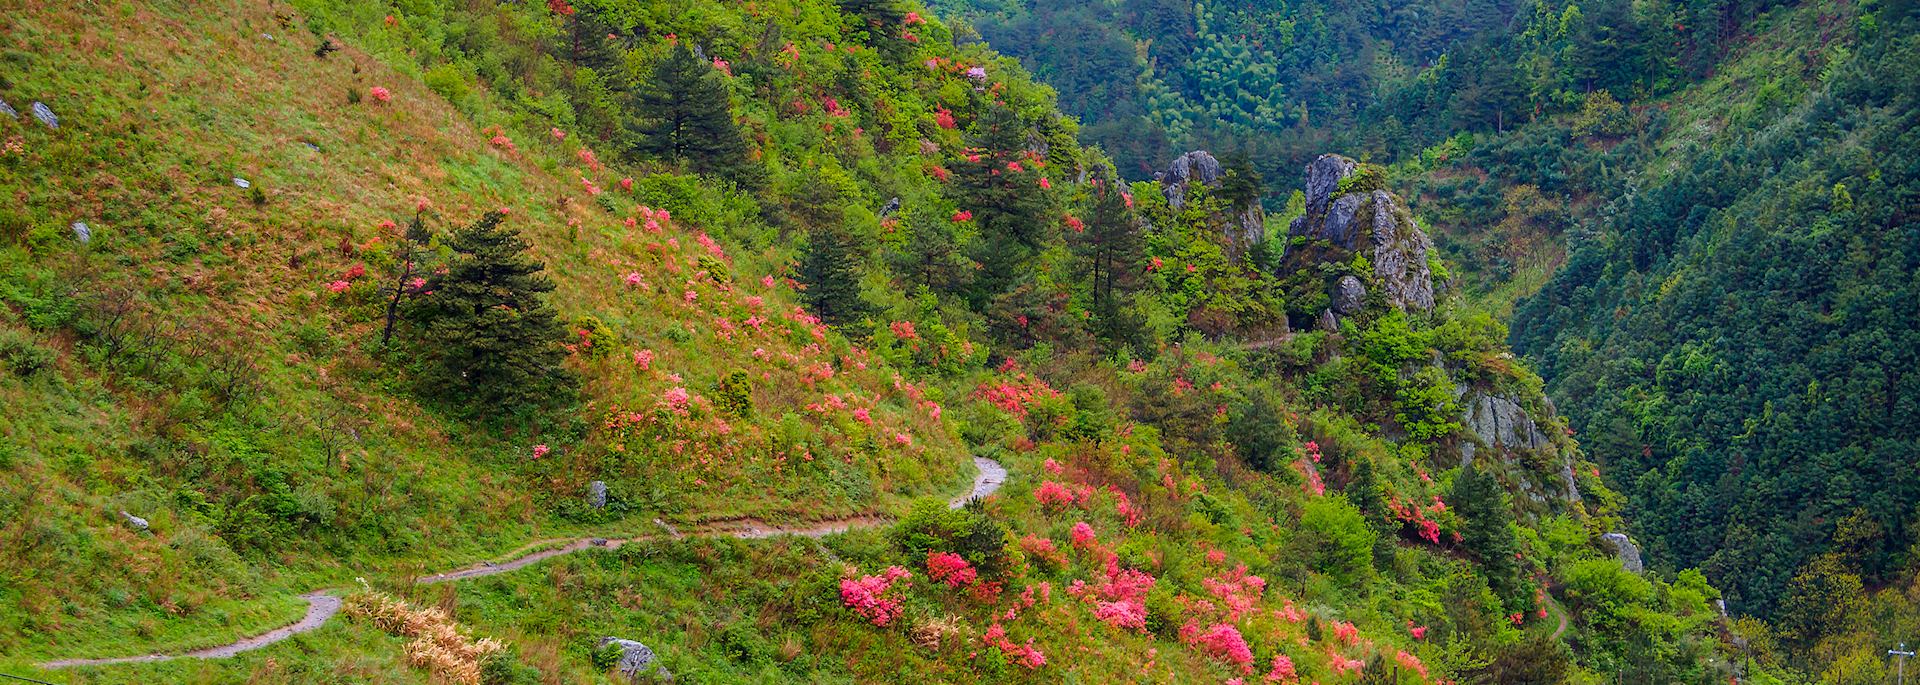 Huihang ancient hiking trail